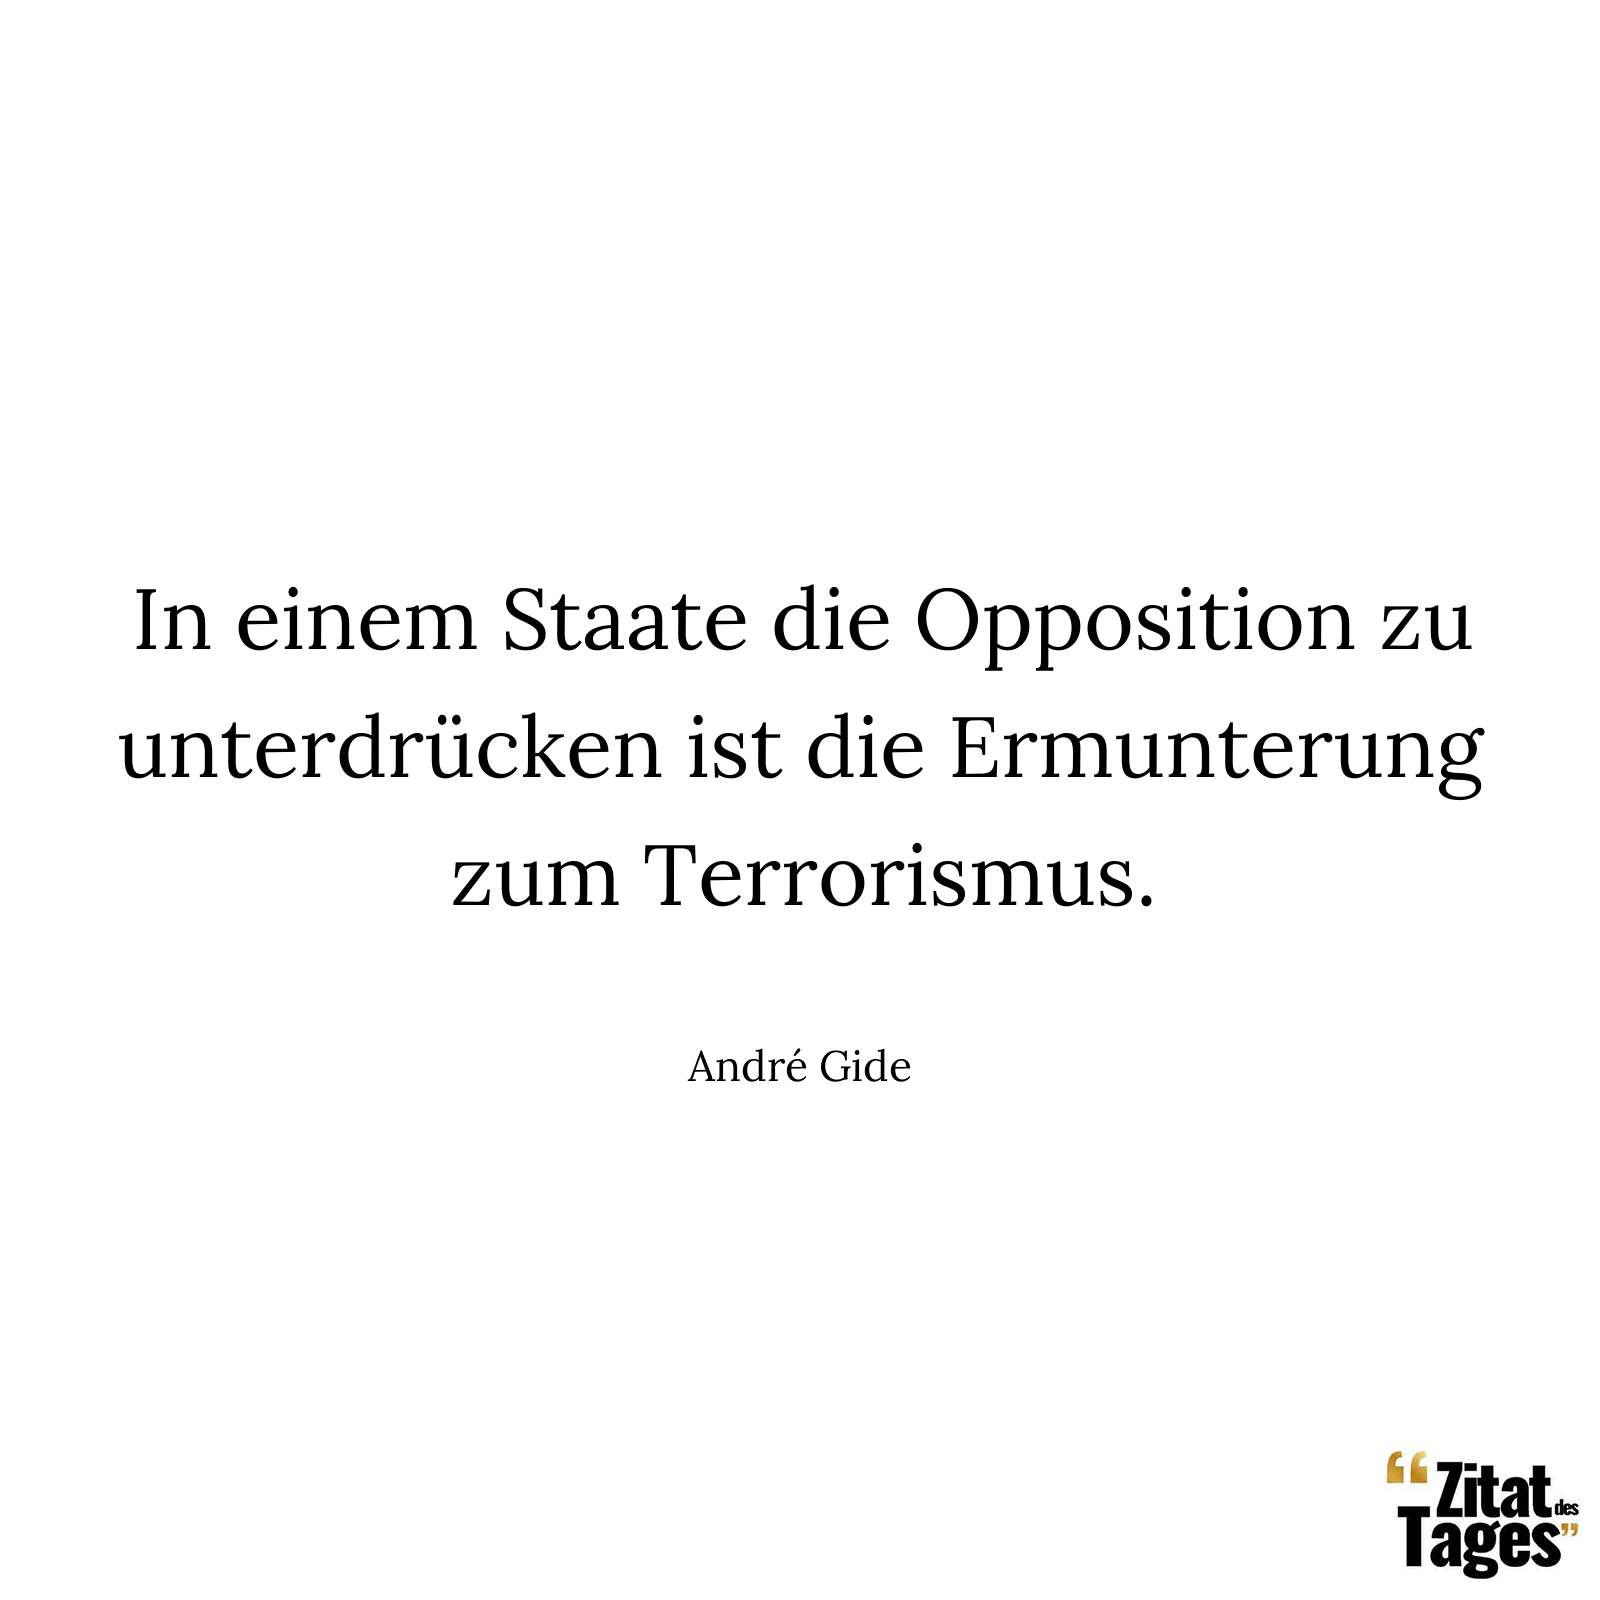 In einem Staate die Opposition zu unterdrücken ist die Ermunterung zum Terrorismus. - André Gide